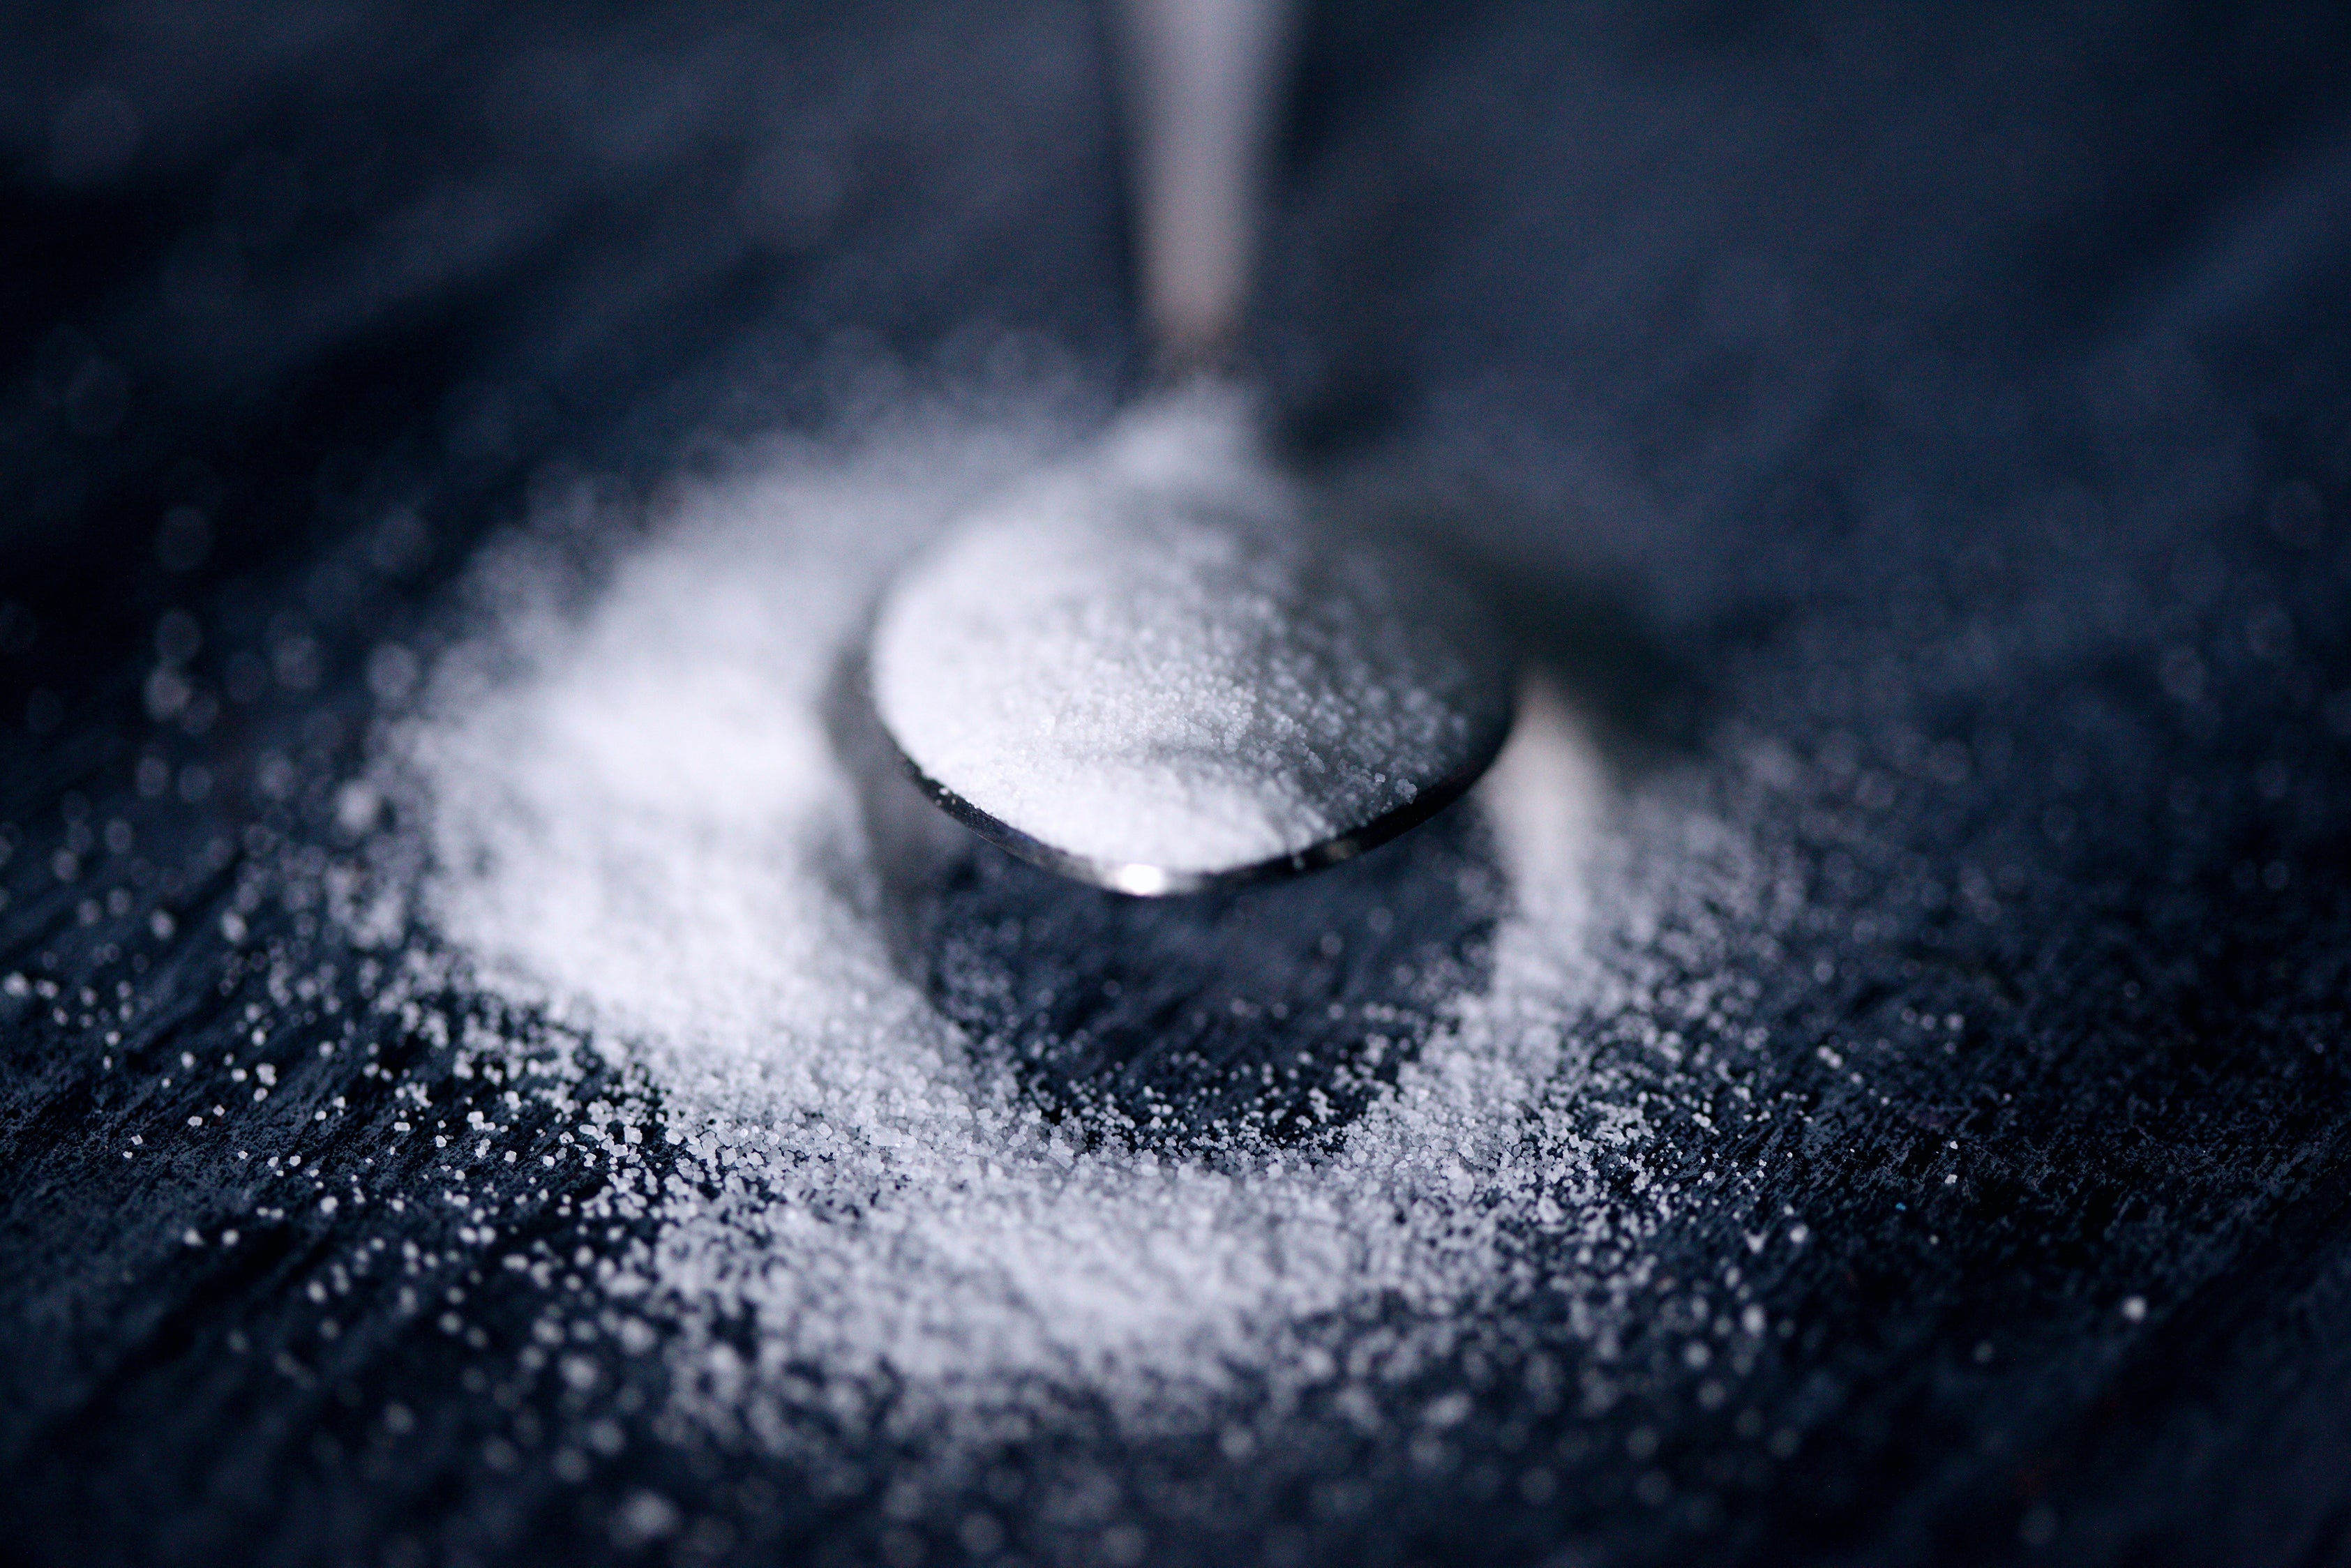 Aspartame-Free Gum: What’s the Scoop?